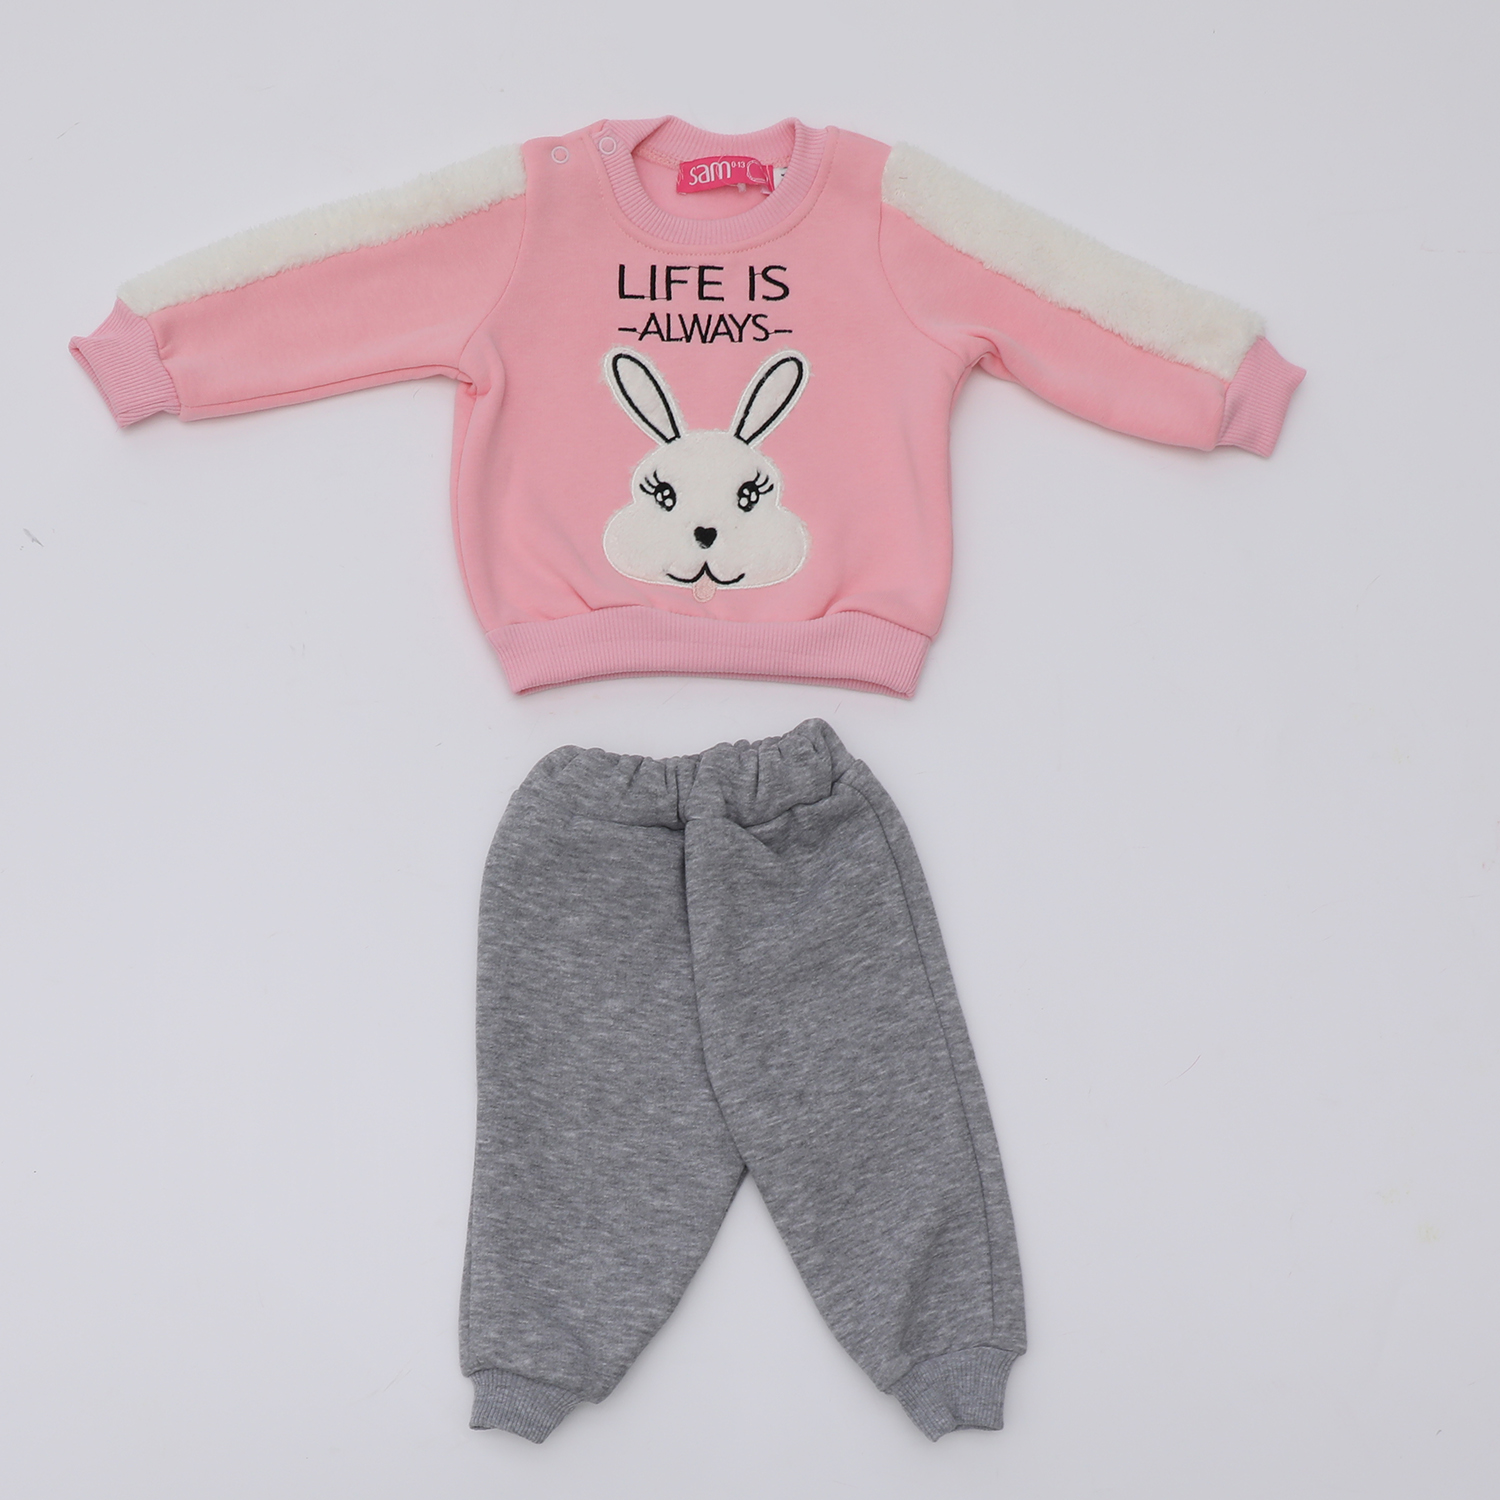 Παιδικά/Baby/Ρούχα/Σετ SAM 0-13 - Βρεφικό σετ φόρμας SAM 0-13 LIFE IS ALWAYS ροζ γκρι